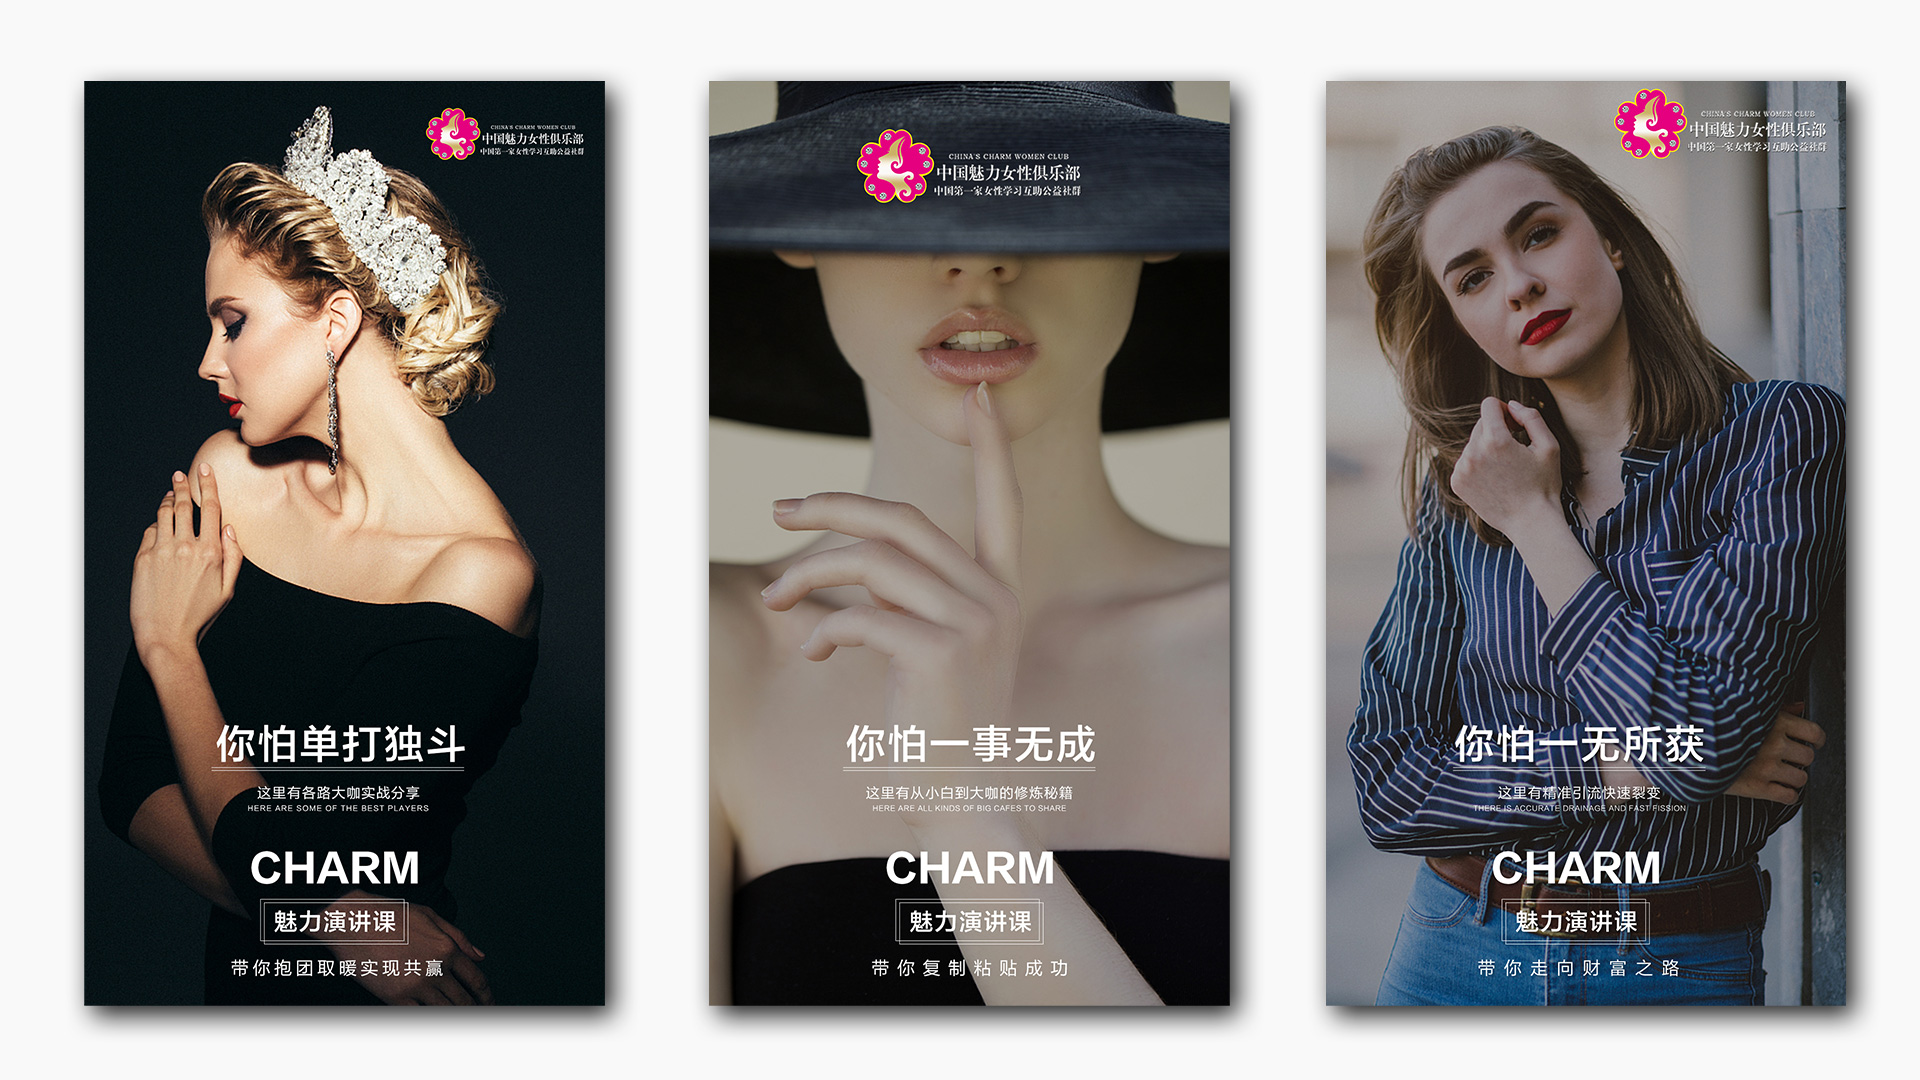 【太空人×魅力女性俱乐部】女性社群海报推广设计案例